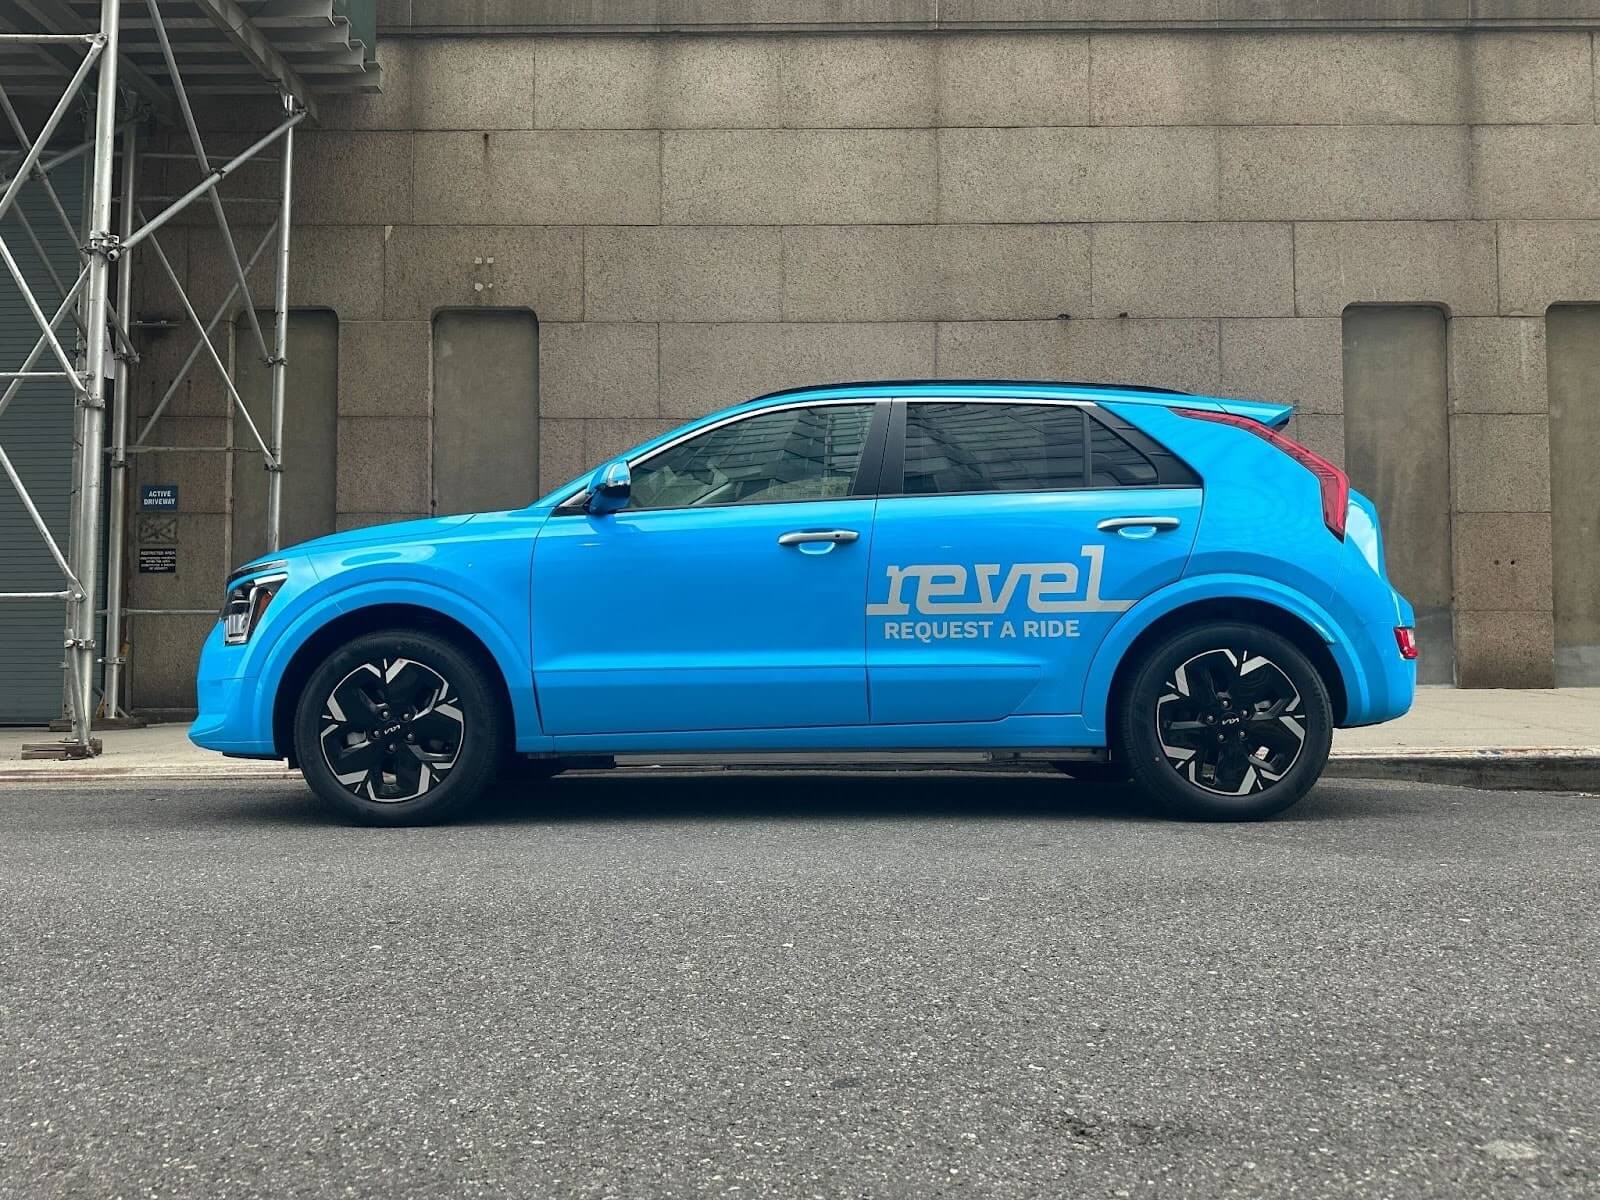 Revel espande la flotta di rideshare di New York con un nuovo veicolo elettrico, unendosi a Tesla Model Y e 3